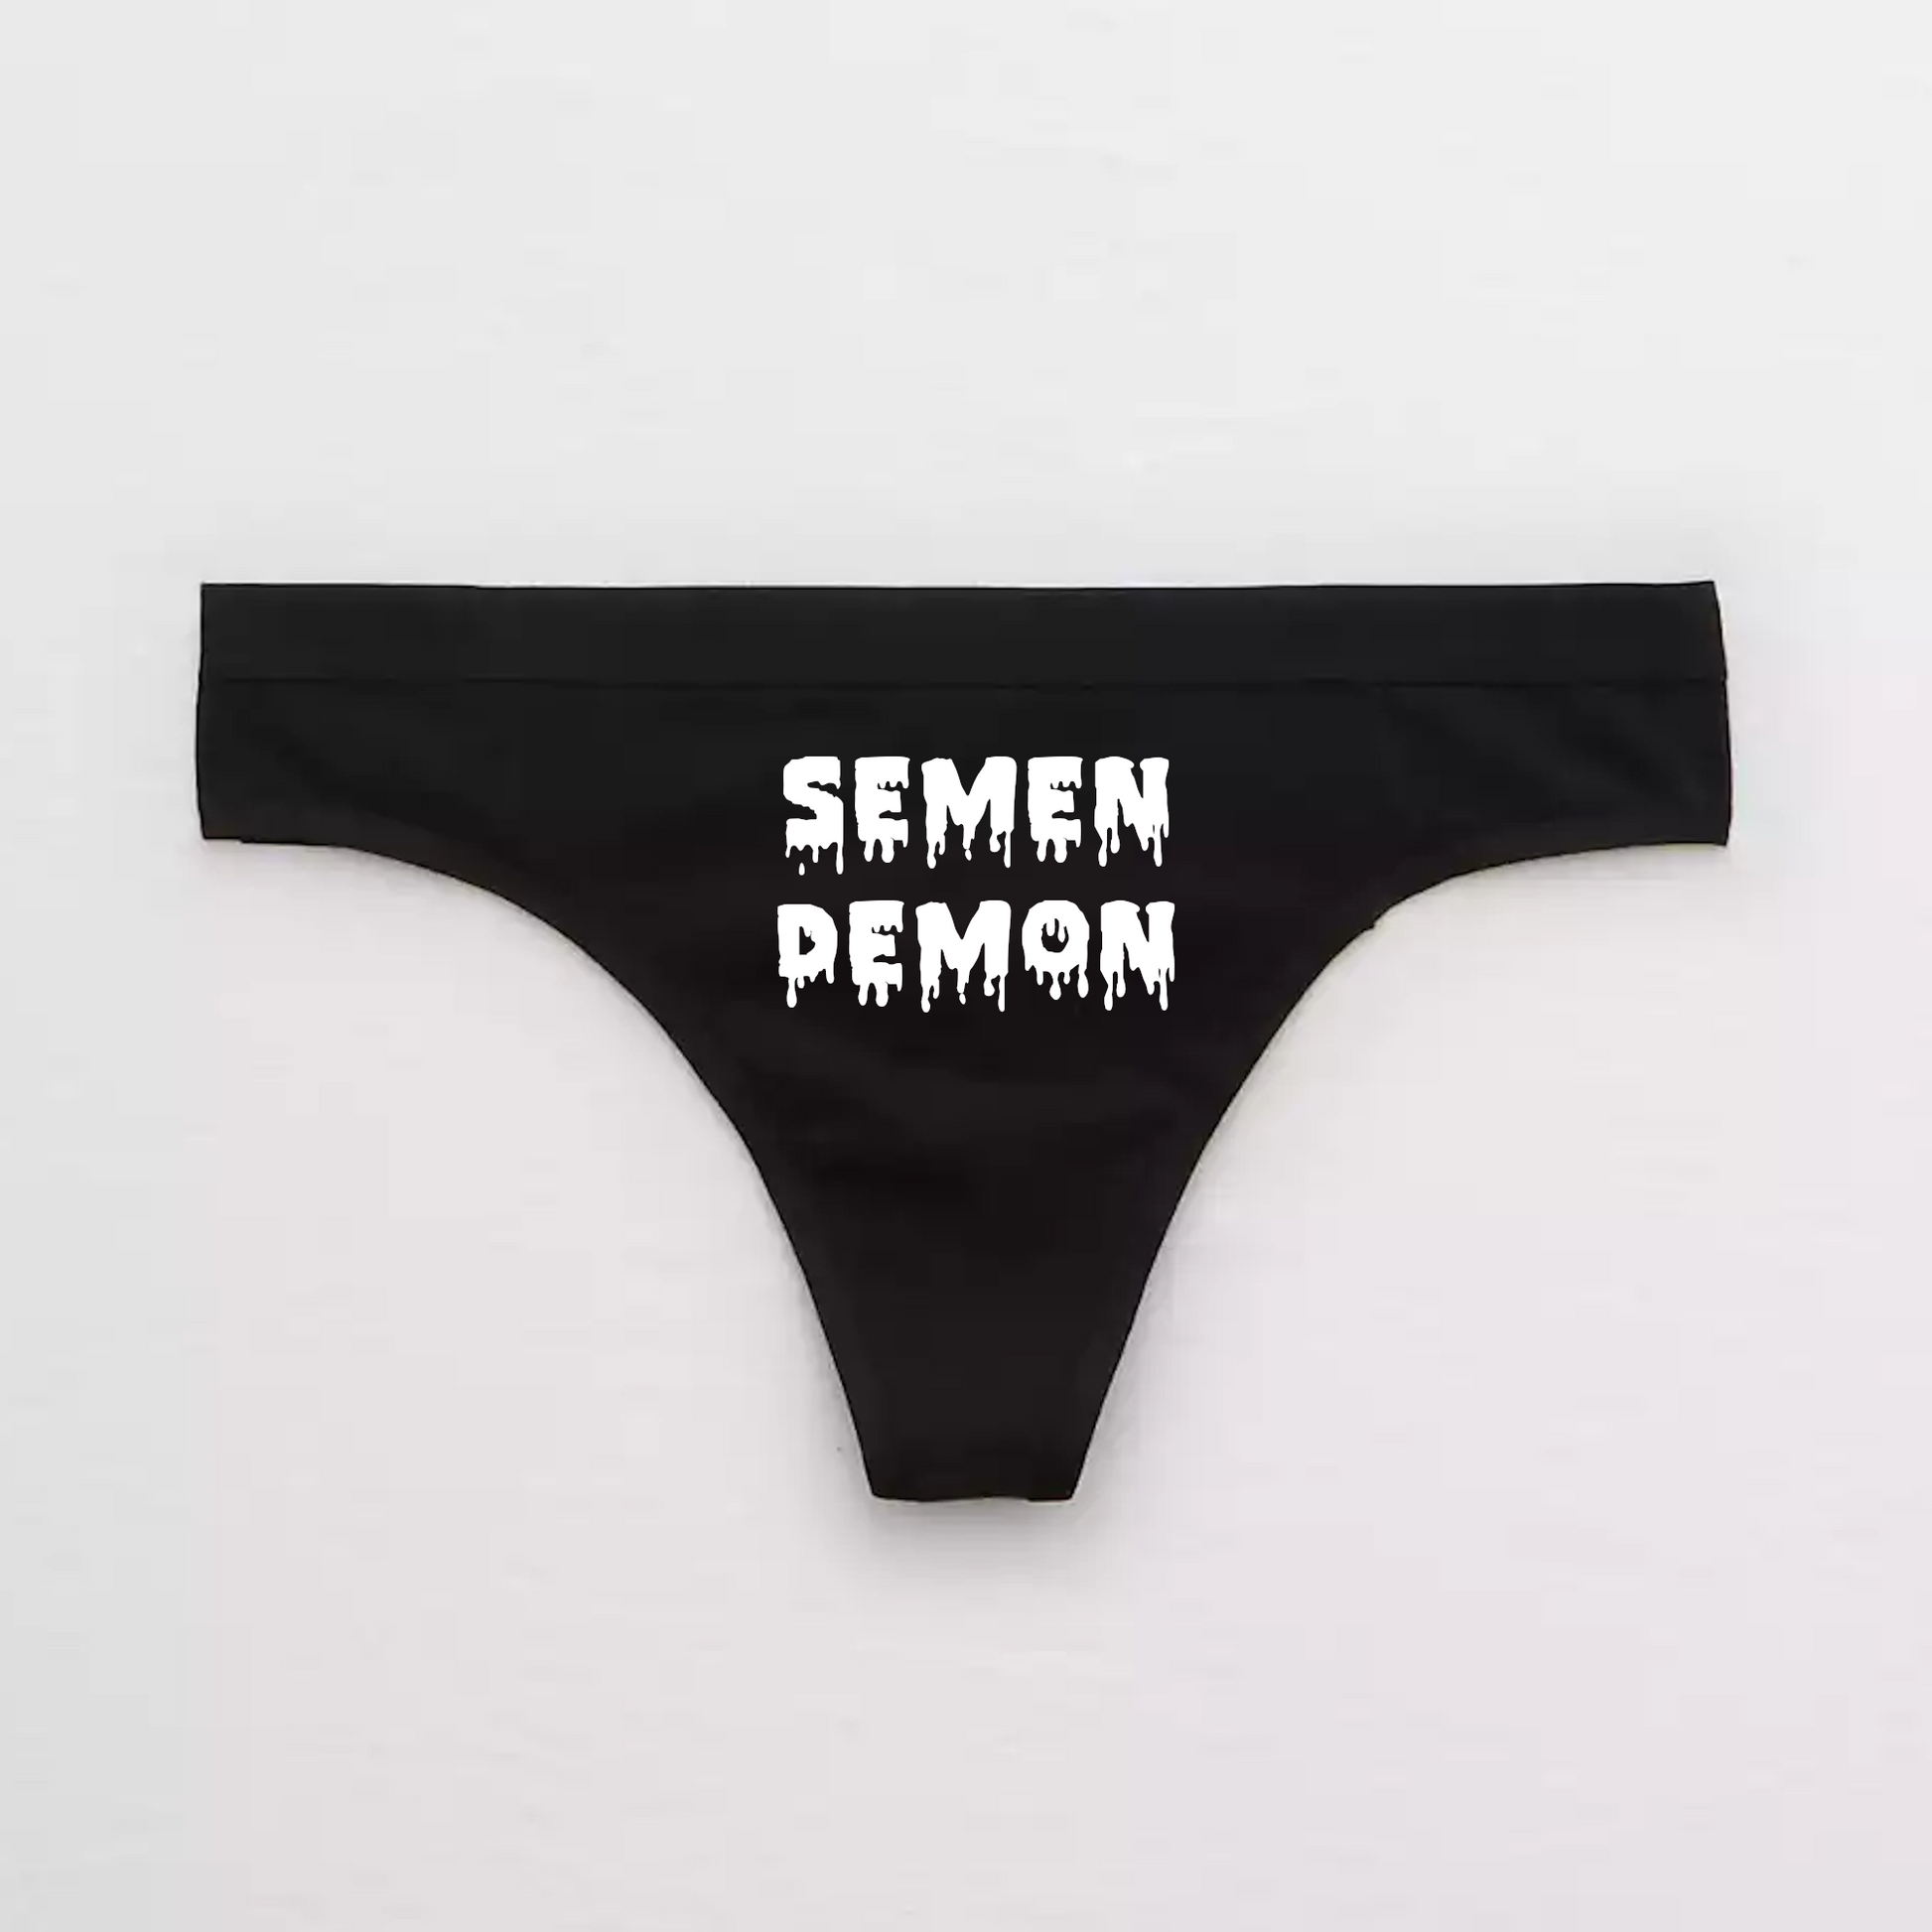 Semon Demon Funny Panties